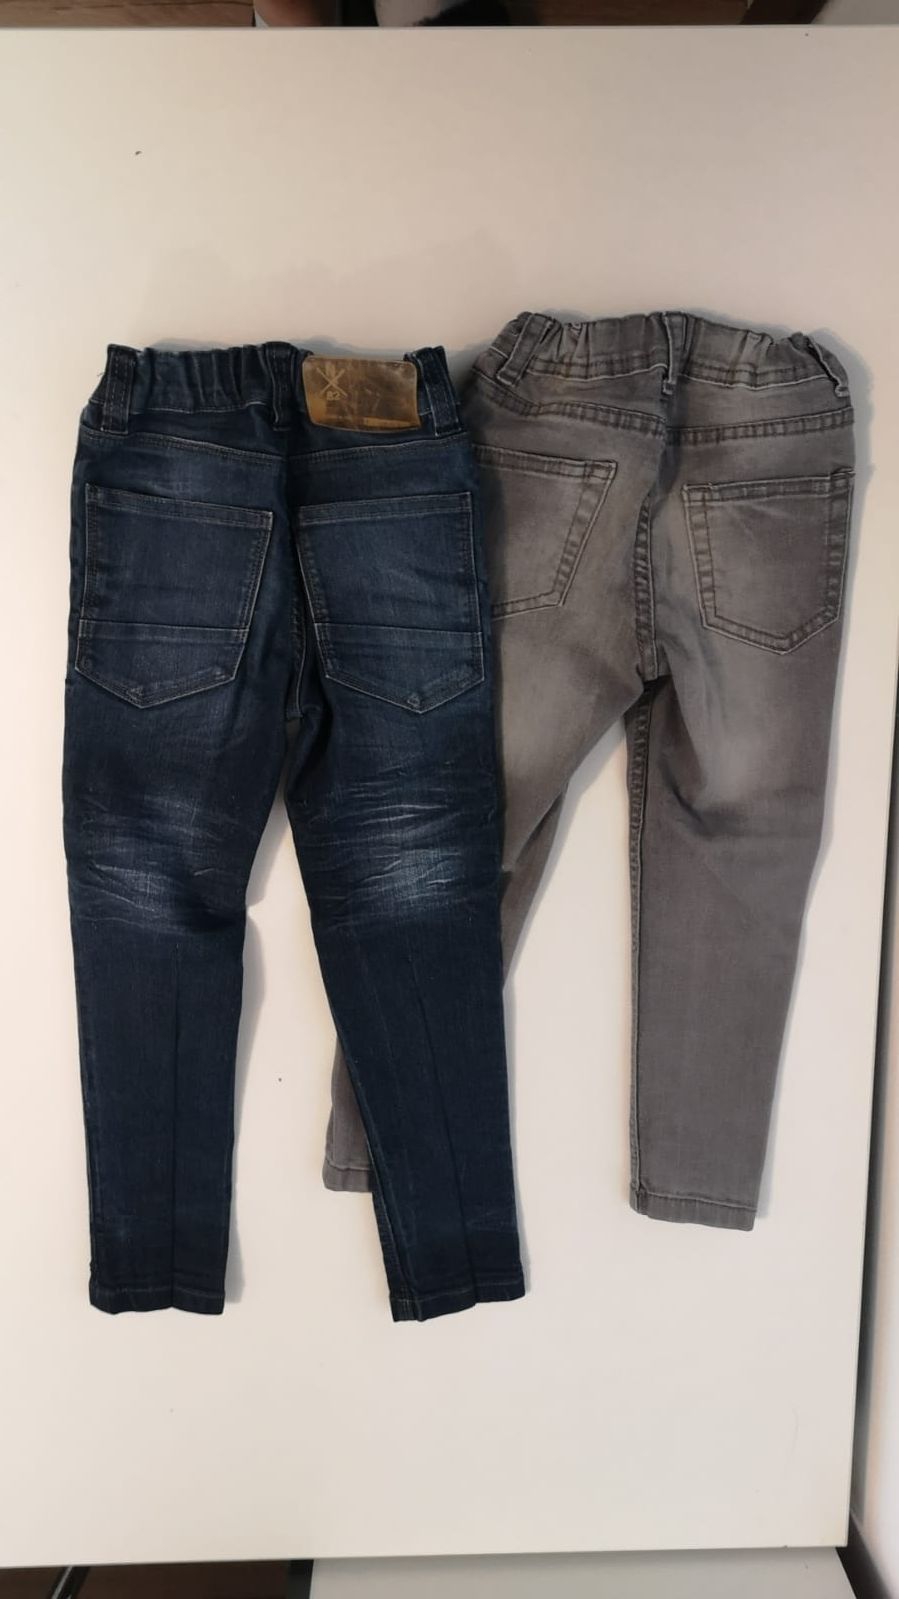 Jeans dżins dla chłopca rurki wąskie szare granatowe skinny 98-104